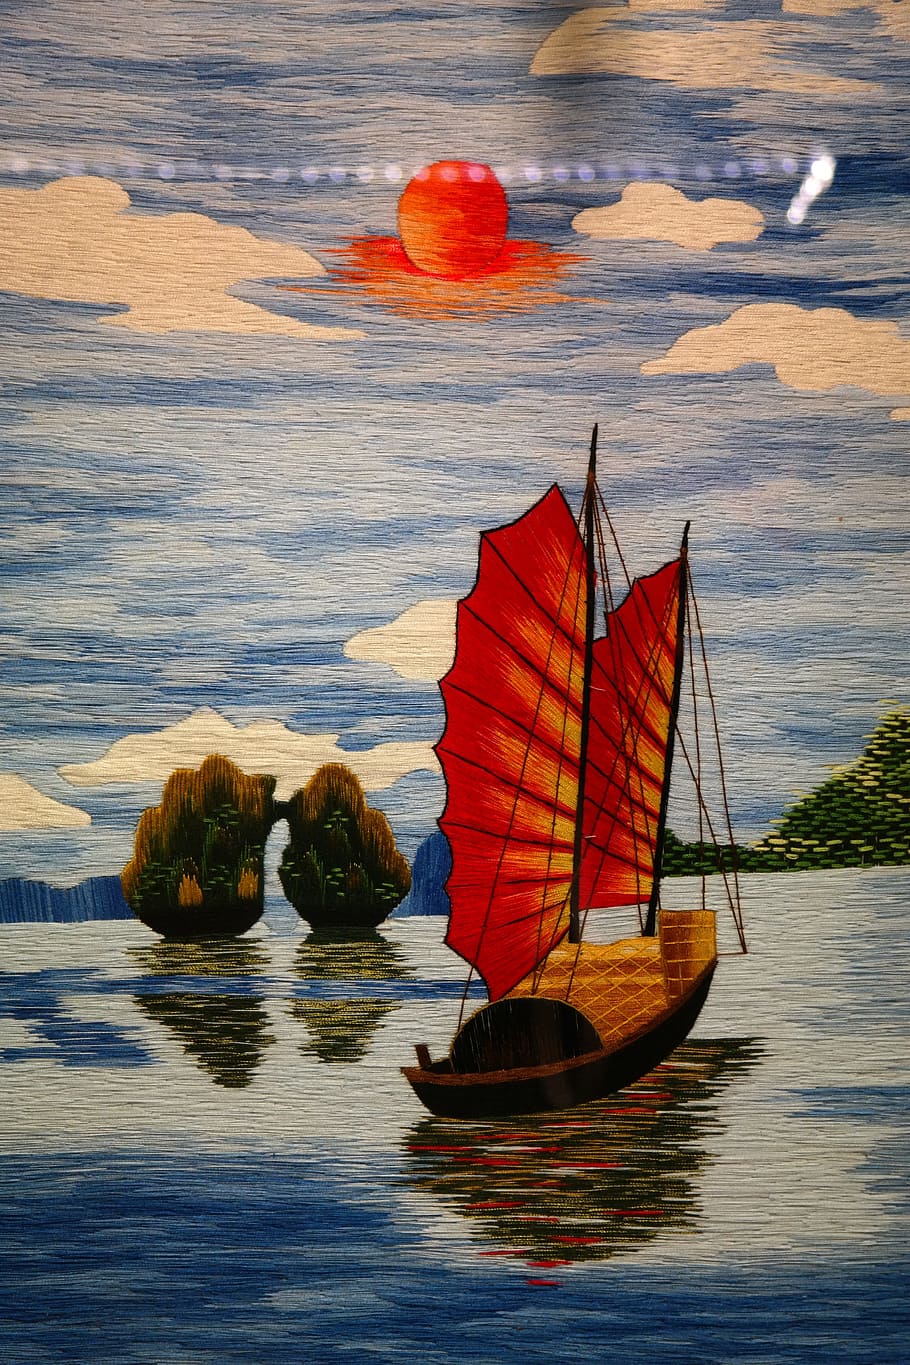 sail, boat, Image, Painting, Boot, Sailing Boat, junk, chinese, sea, water